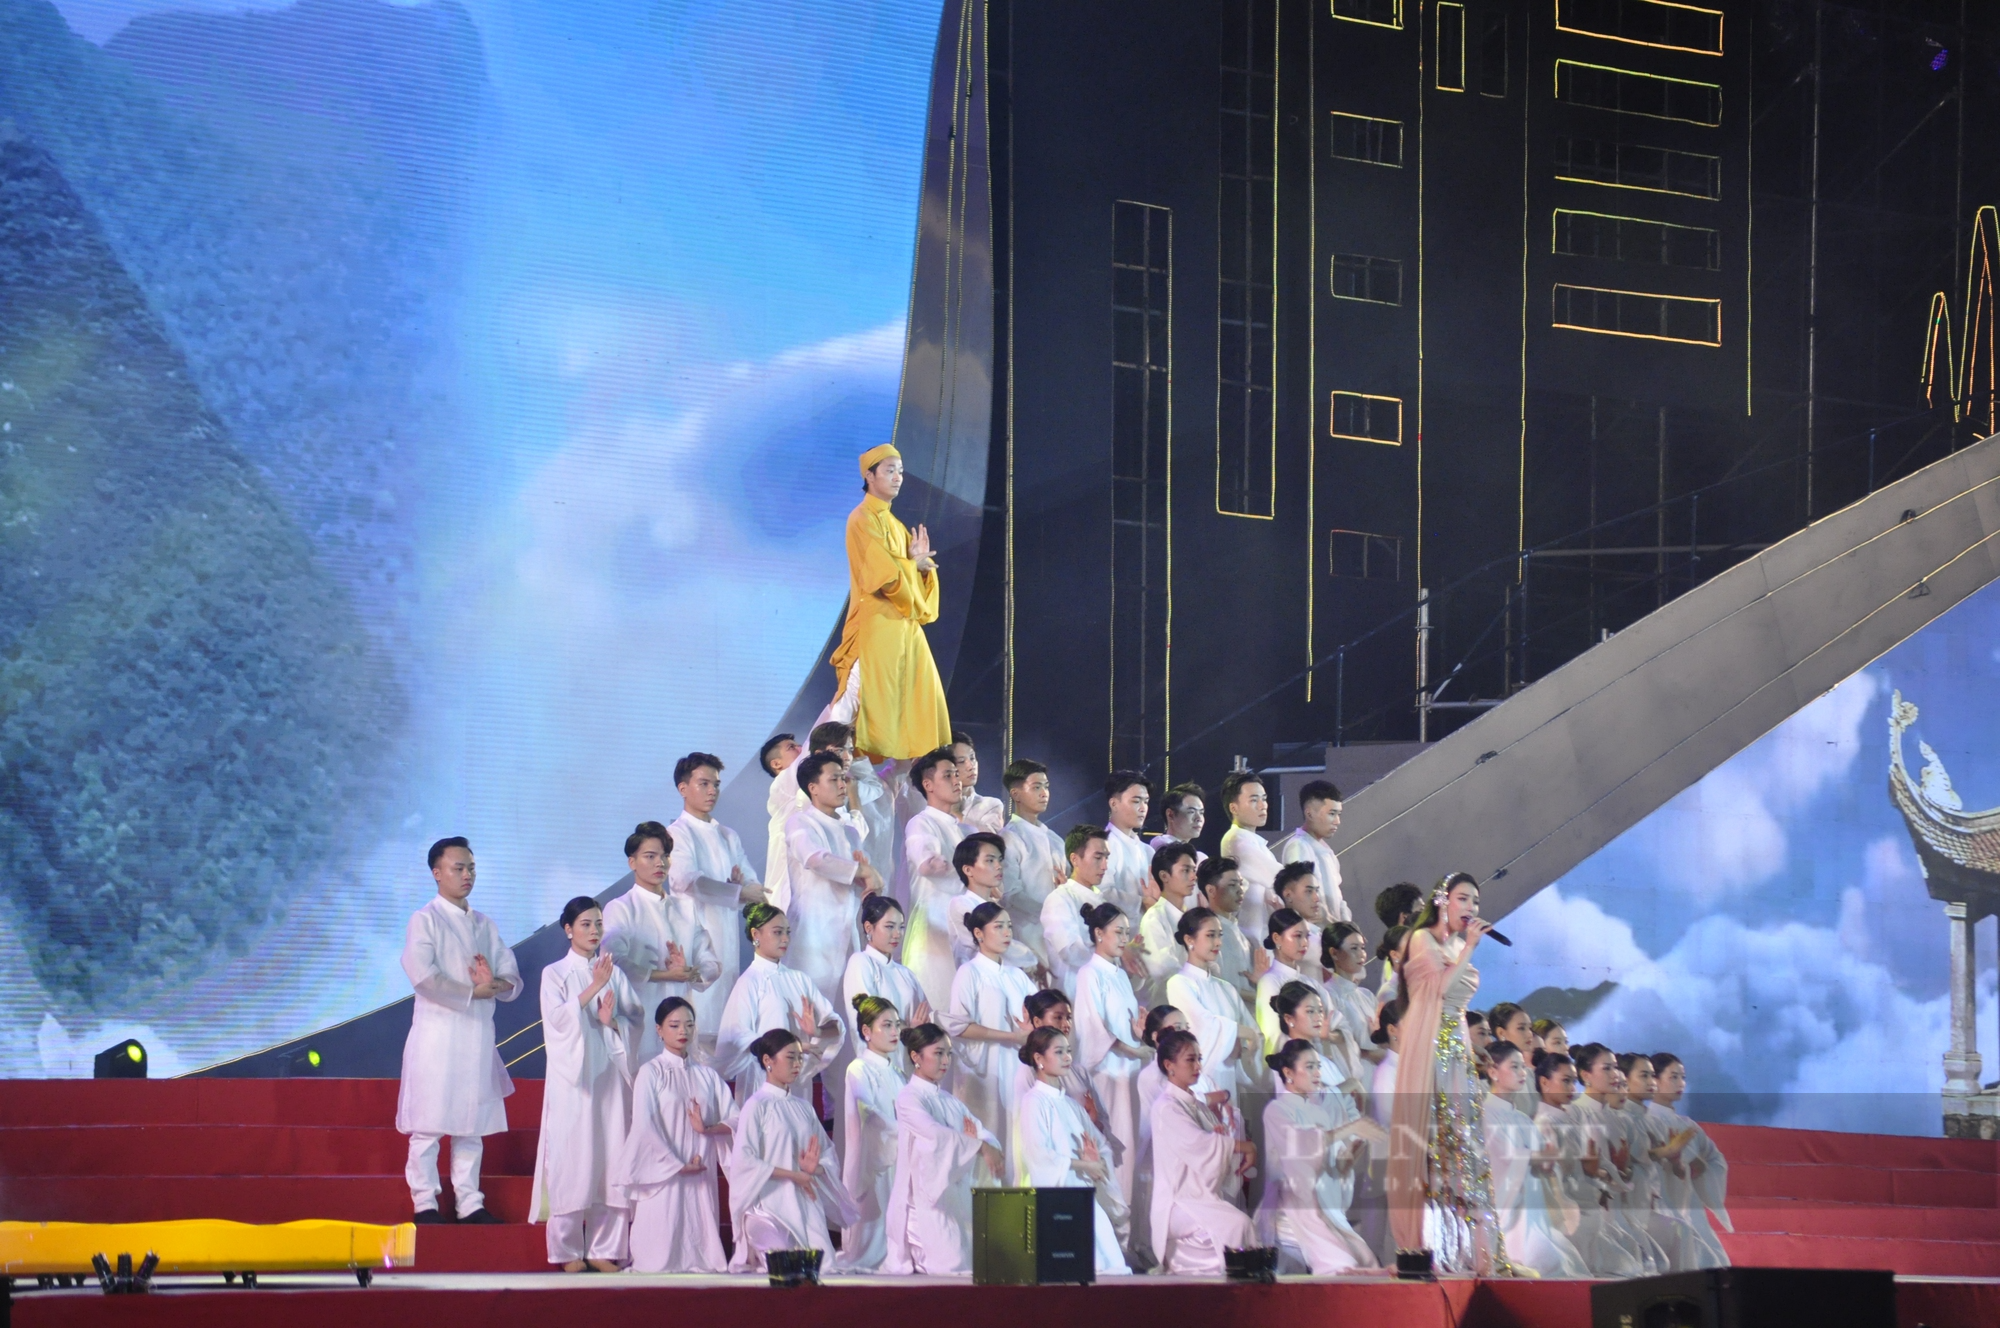 Mãn nhãn với màn trống hội lớn nhất Việt Nam trong lễ kỷ niệm 60 năm Ngày thành lập tỉnh Quảng Ninh - Ảnh 13.